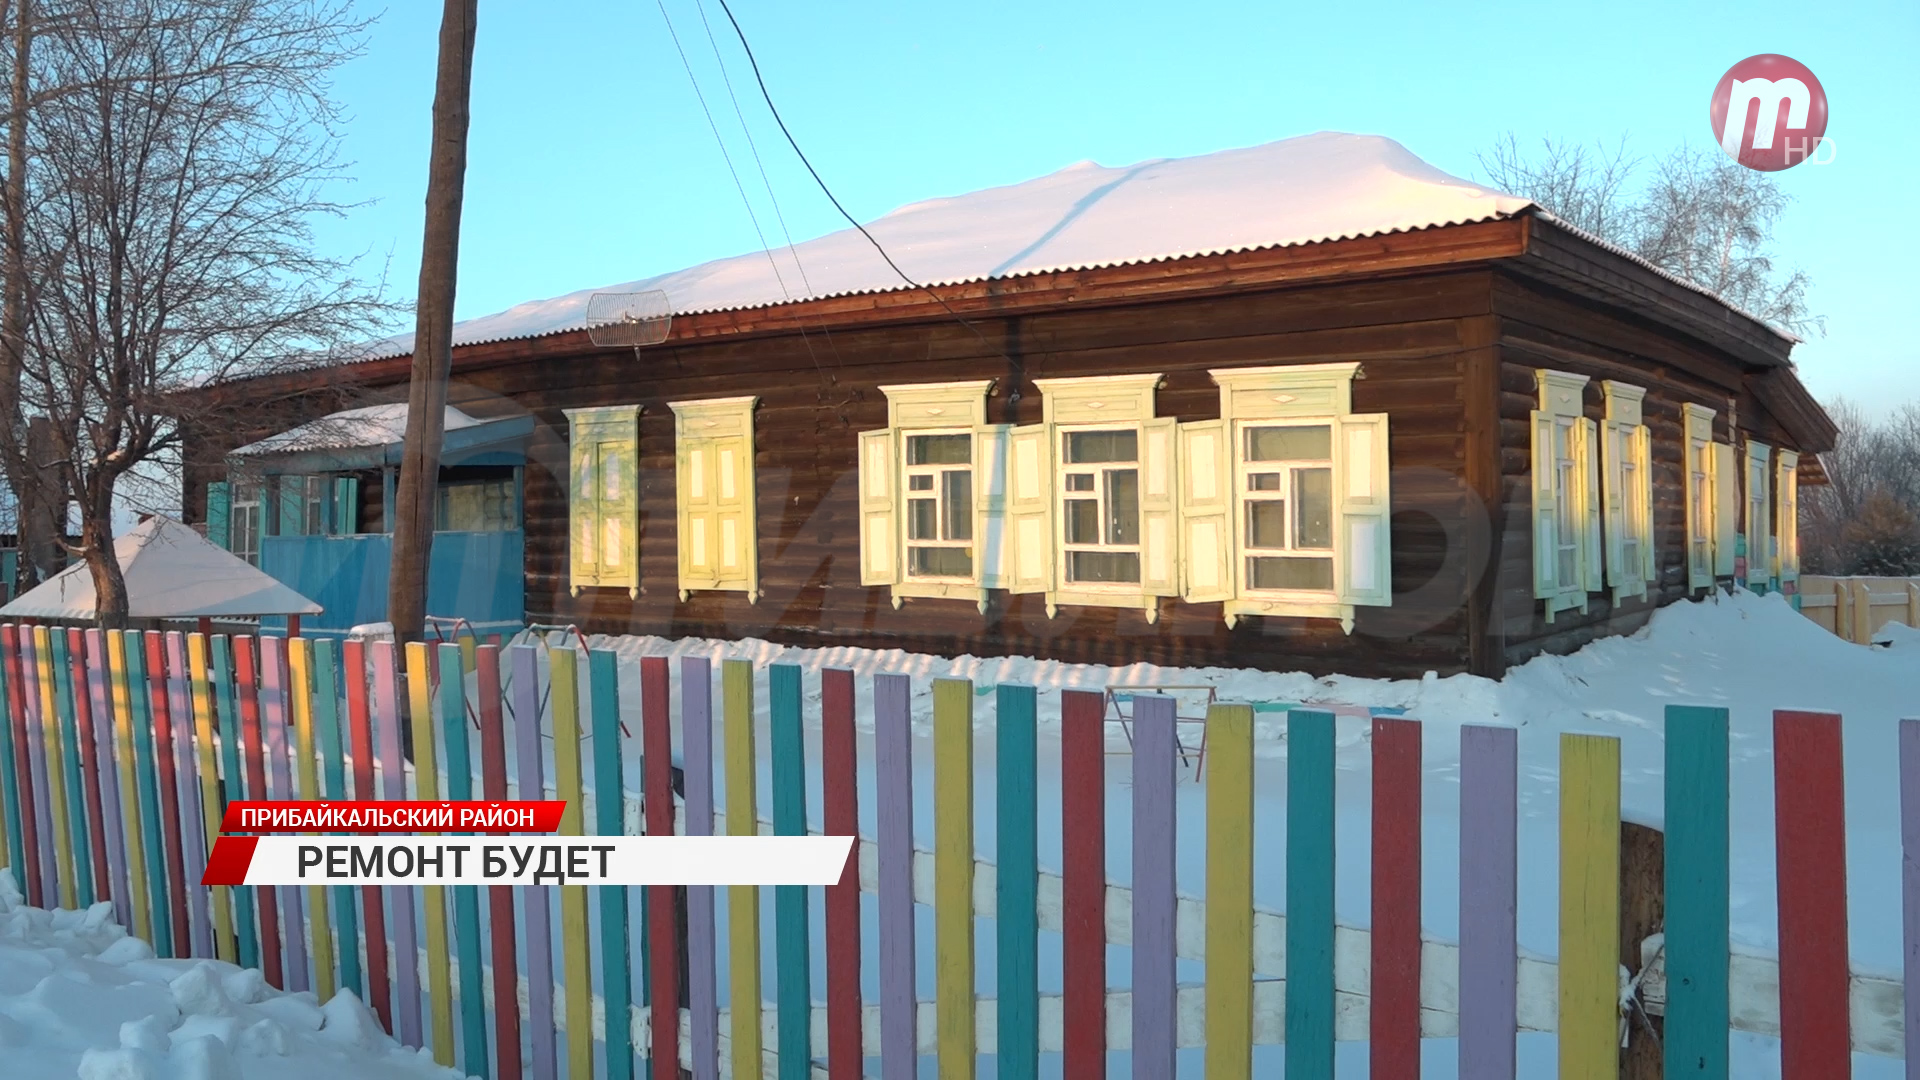 Без слёз не взглянешь. Детский сад в Прибайкальском районе нуждается в срочном ремонте